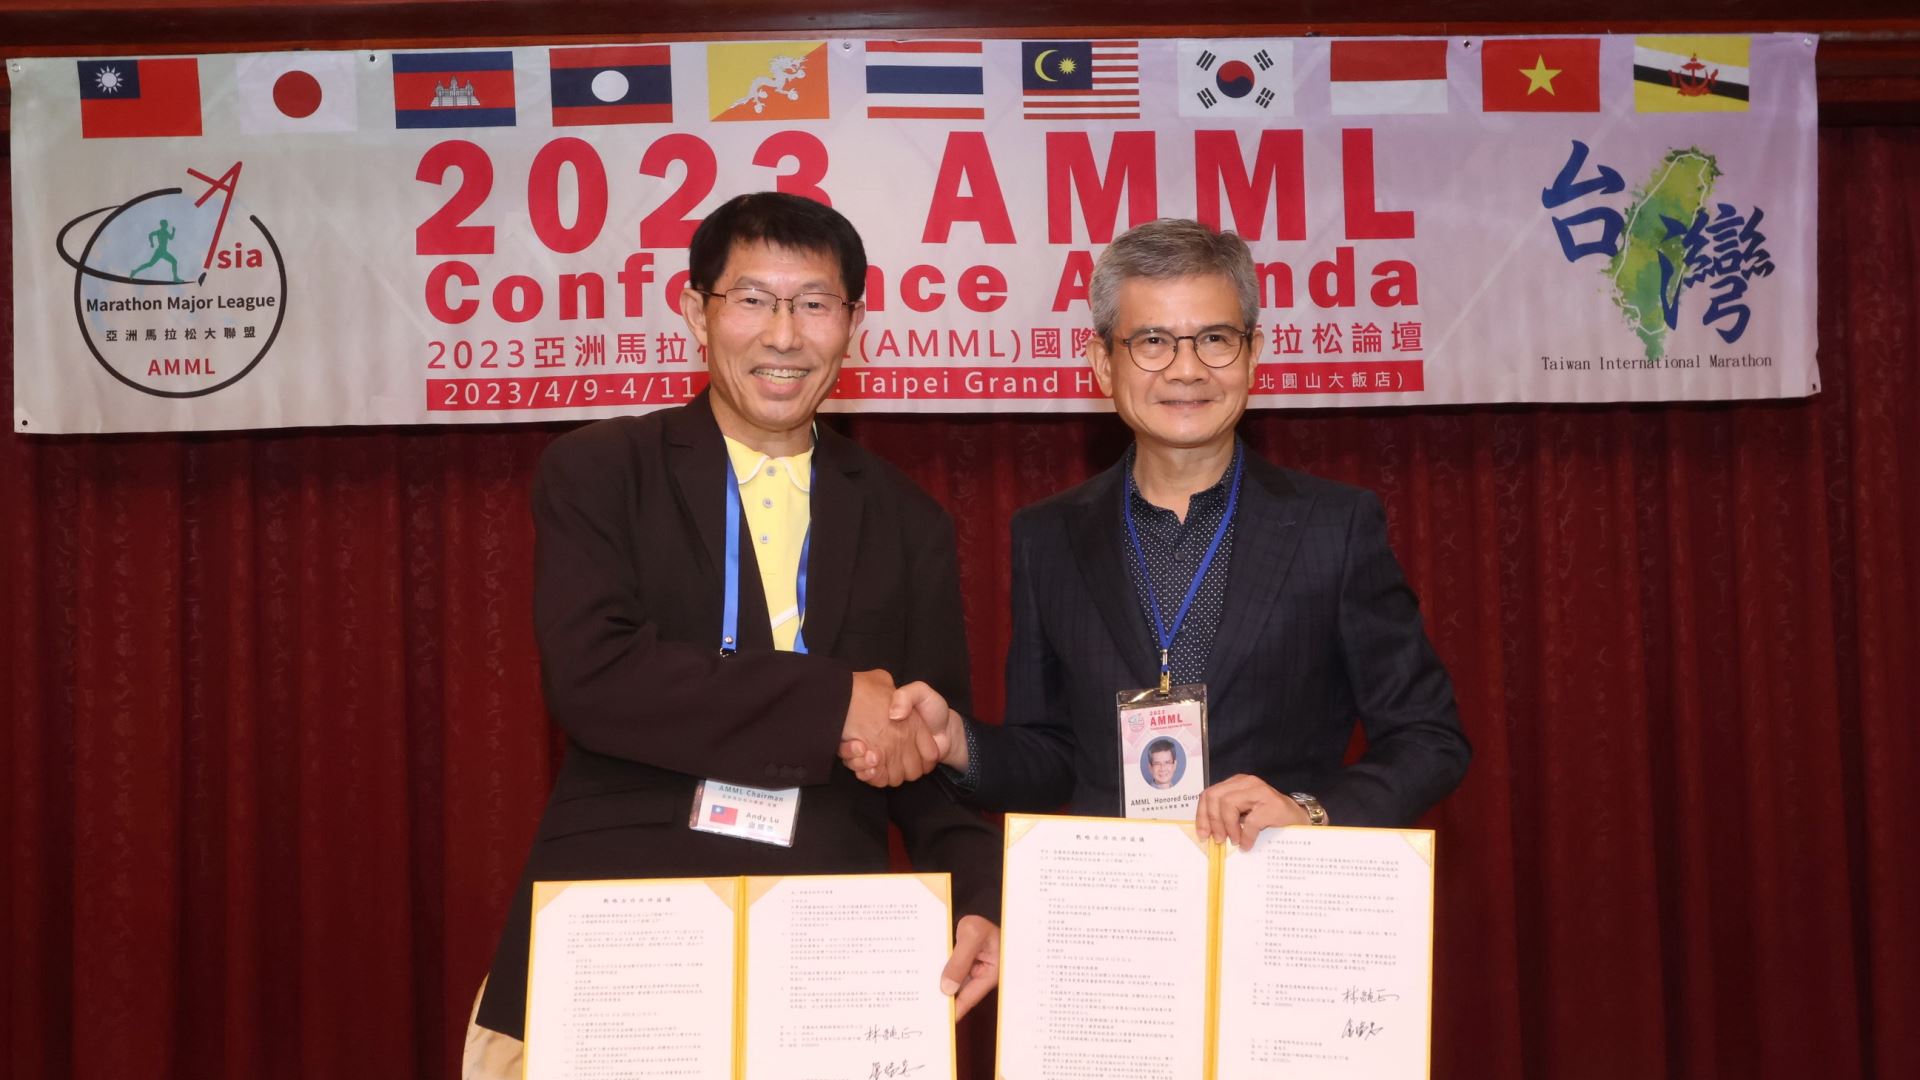 亞洲大聯盟與鼎麗綠色運動簽約合作推廣零排碳賽事，圖為亞盟主席盧瑞忠(左)與鼎麗綠色運動總經理林純正(右)